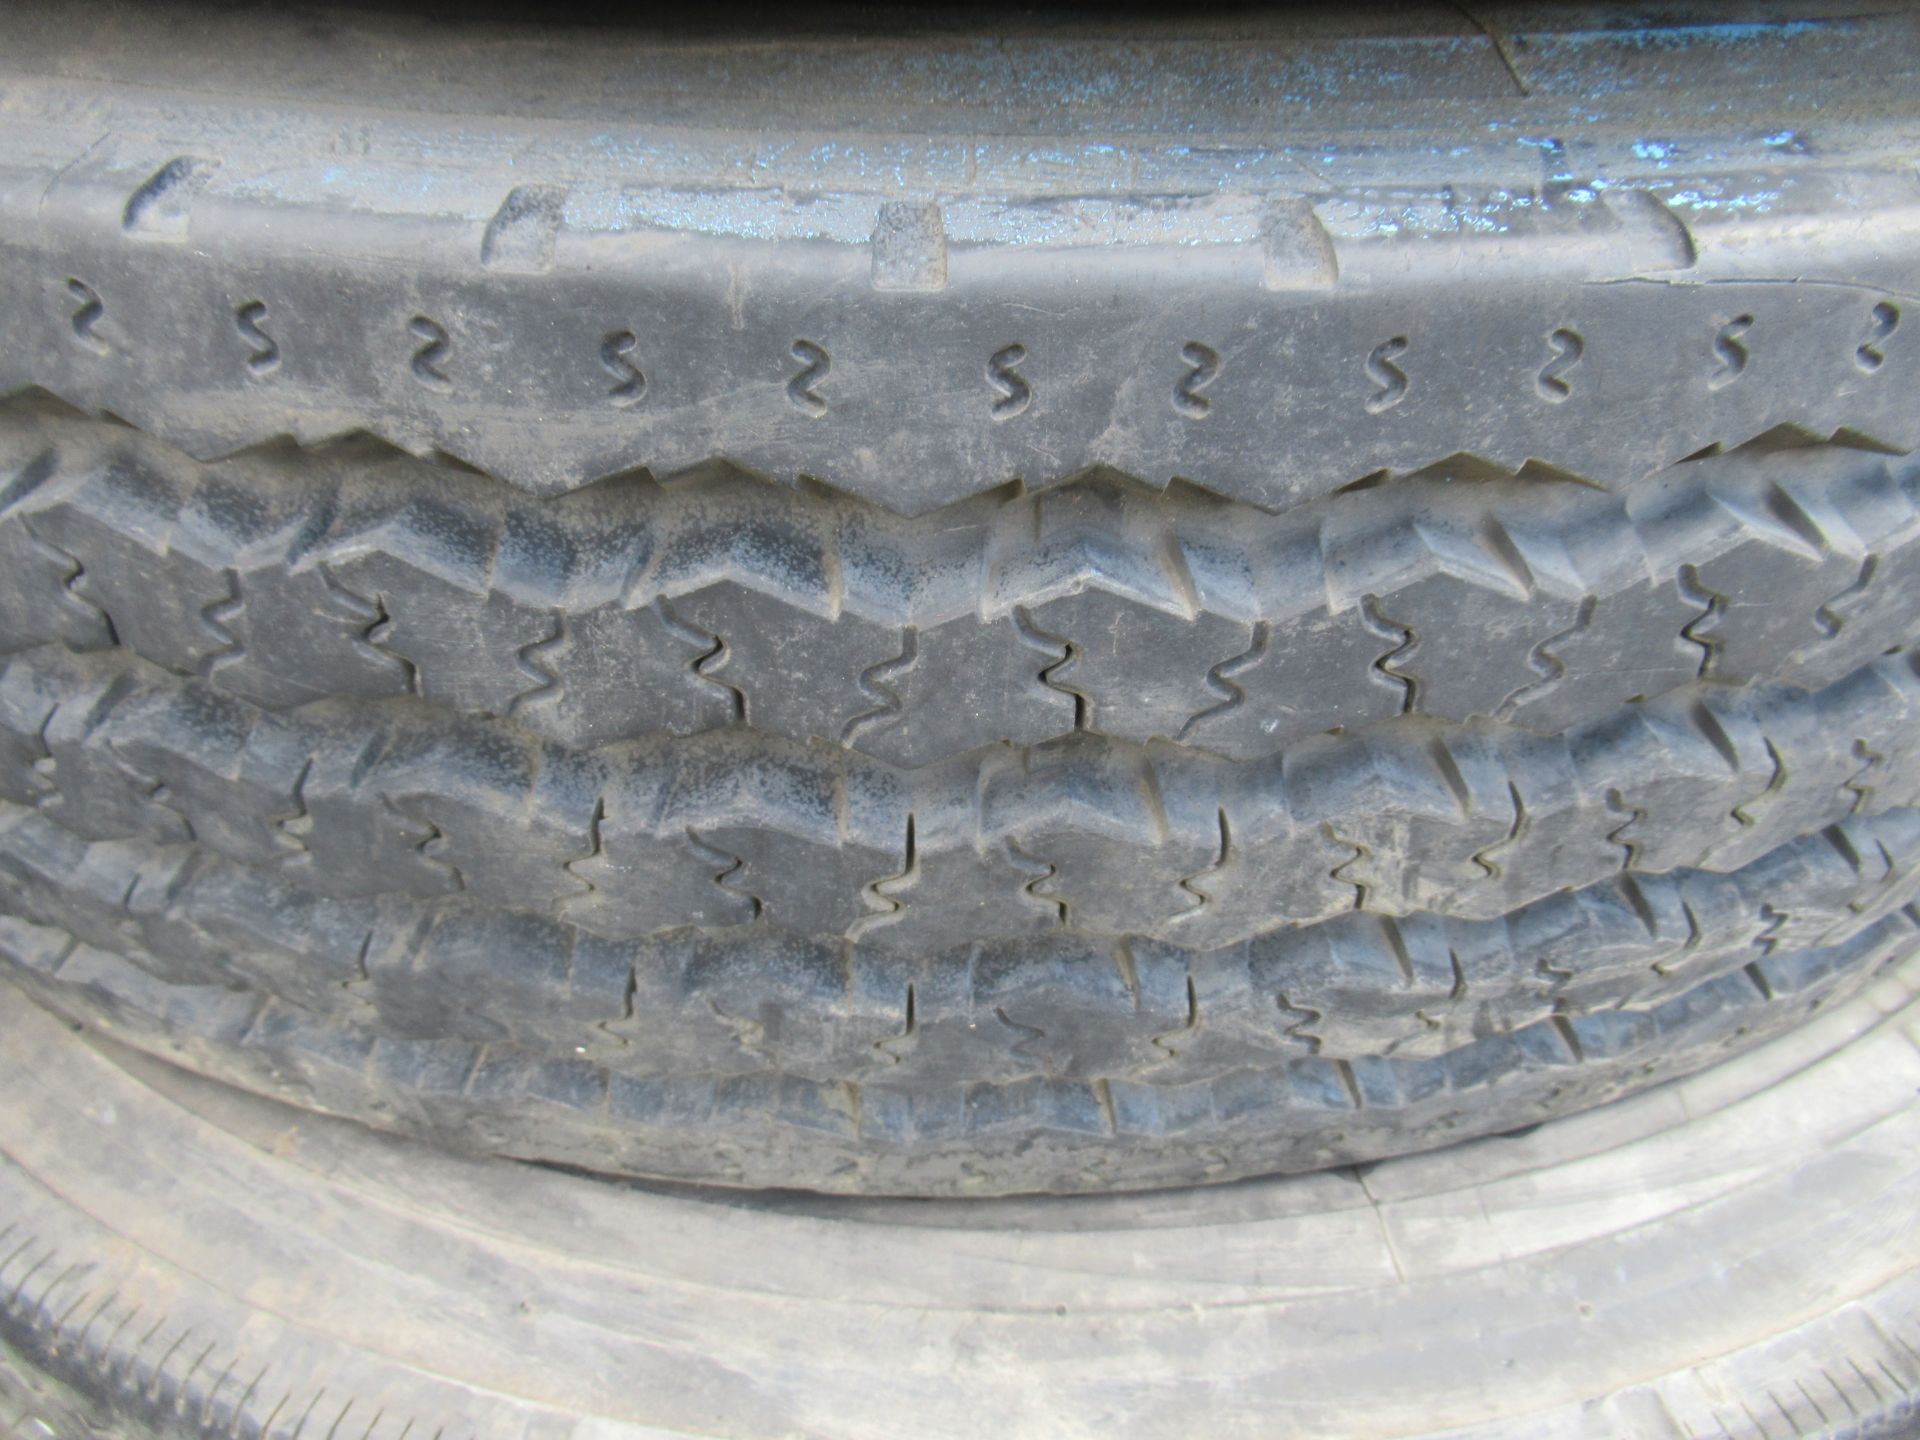 3x Partworn Tyres (275/70R/22.5, 275/80R/22.5, 275/80R/22.5) - Image 5 of 6